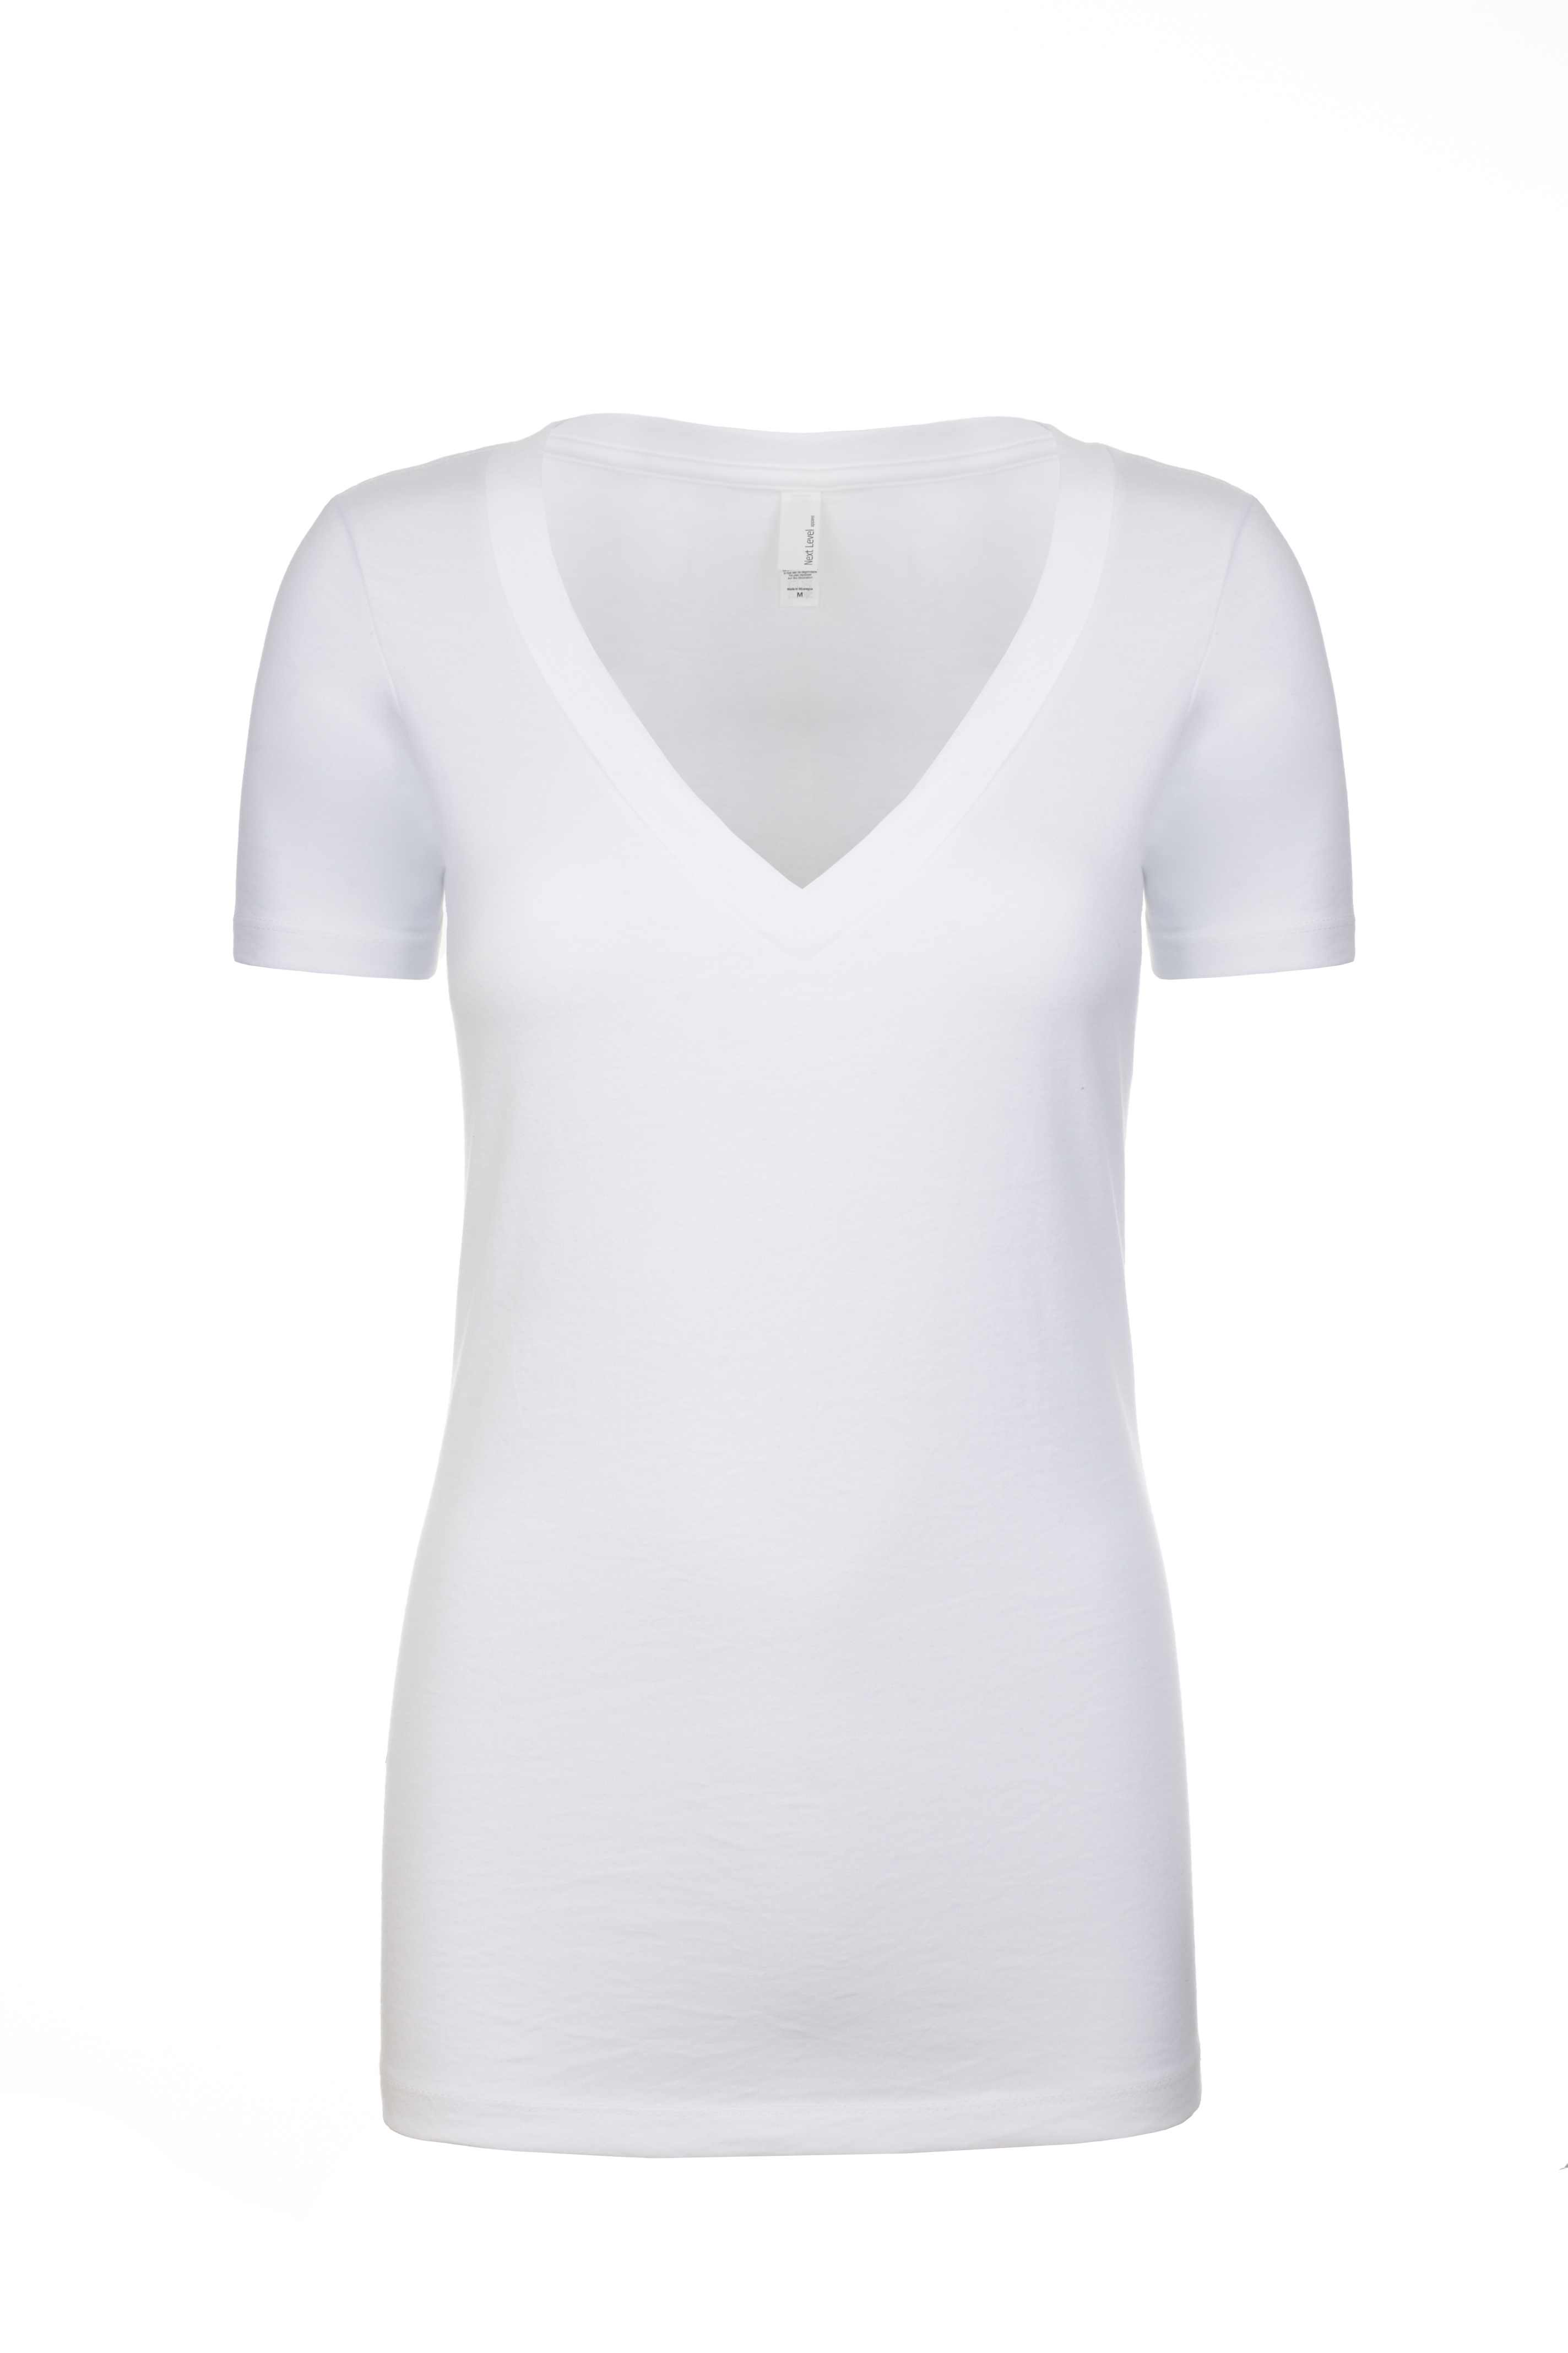 Next Level Apparel® 6640 Women's CVC Deep V-Neck T-Shirt